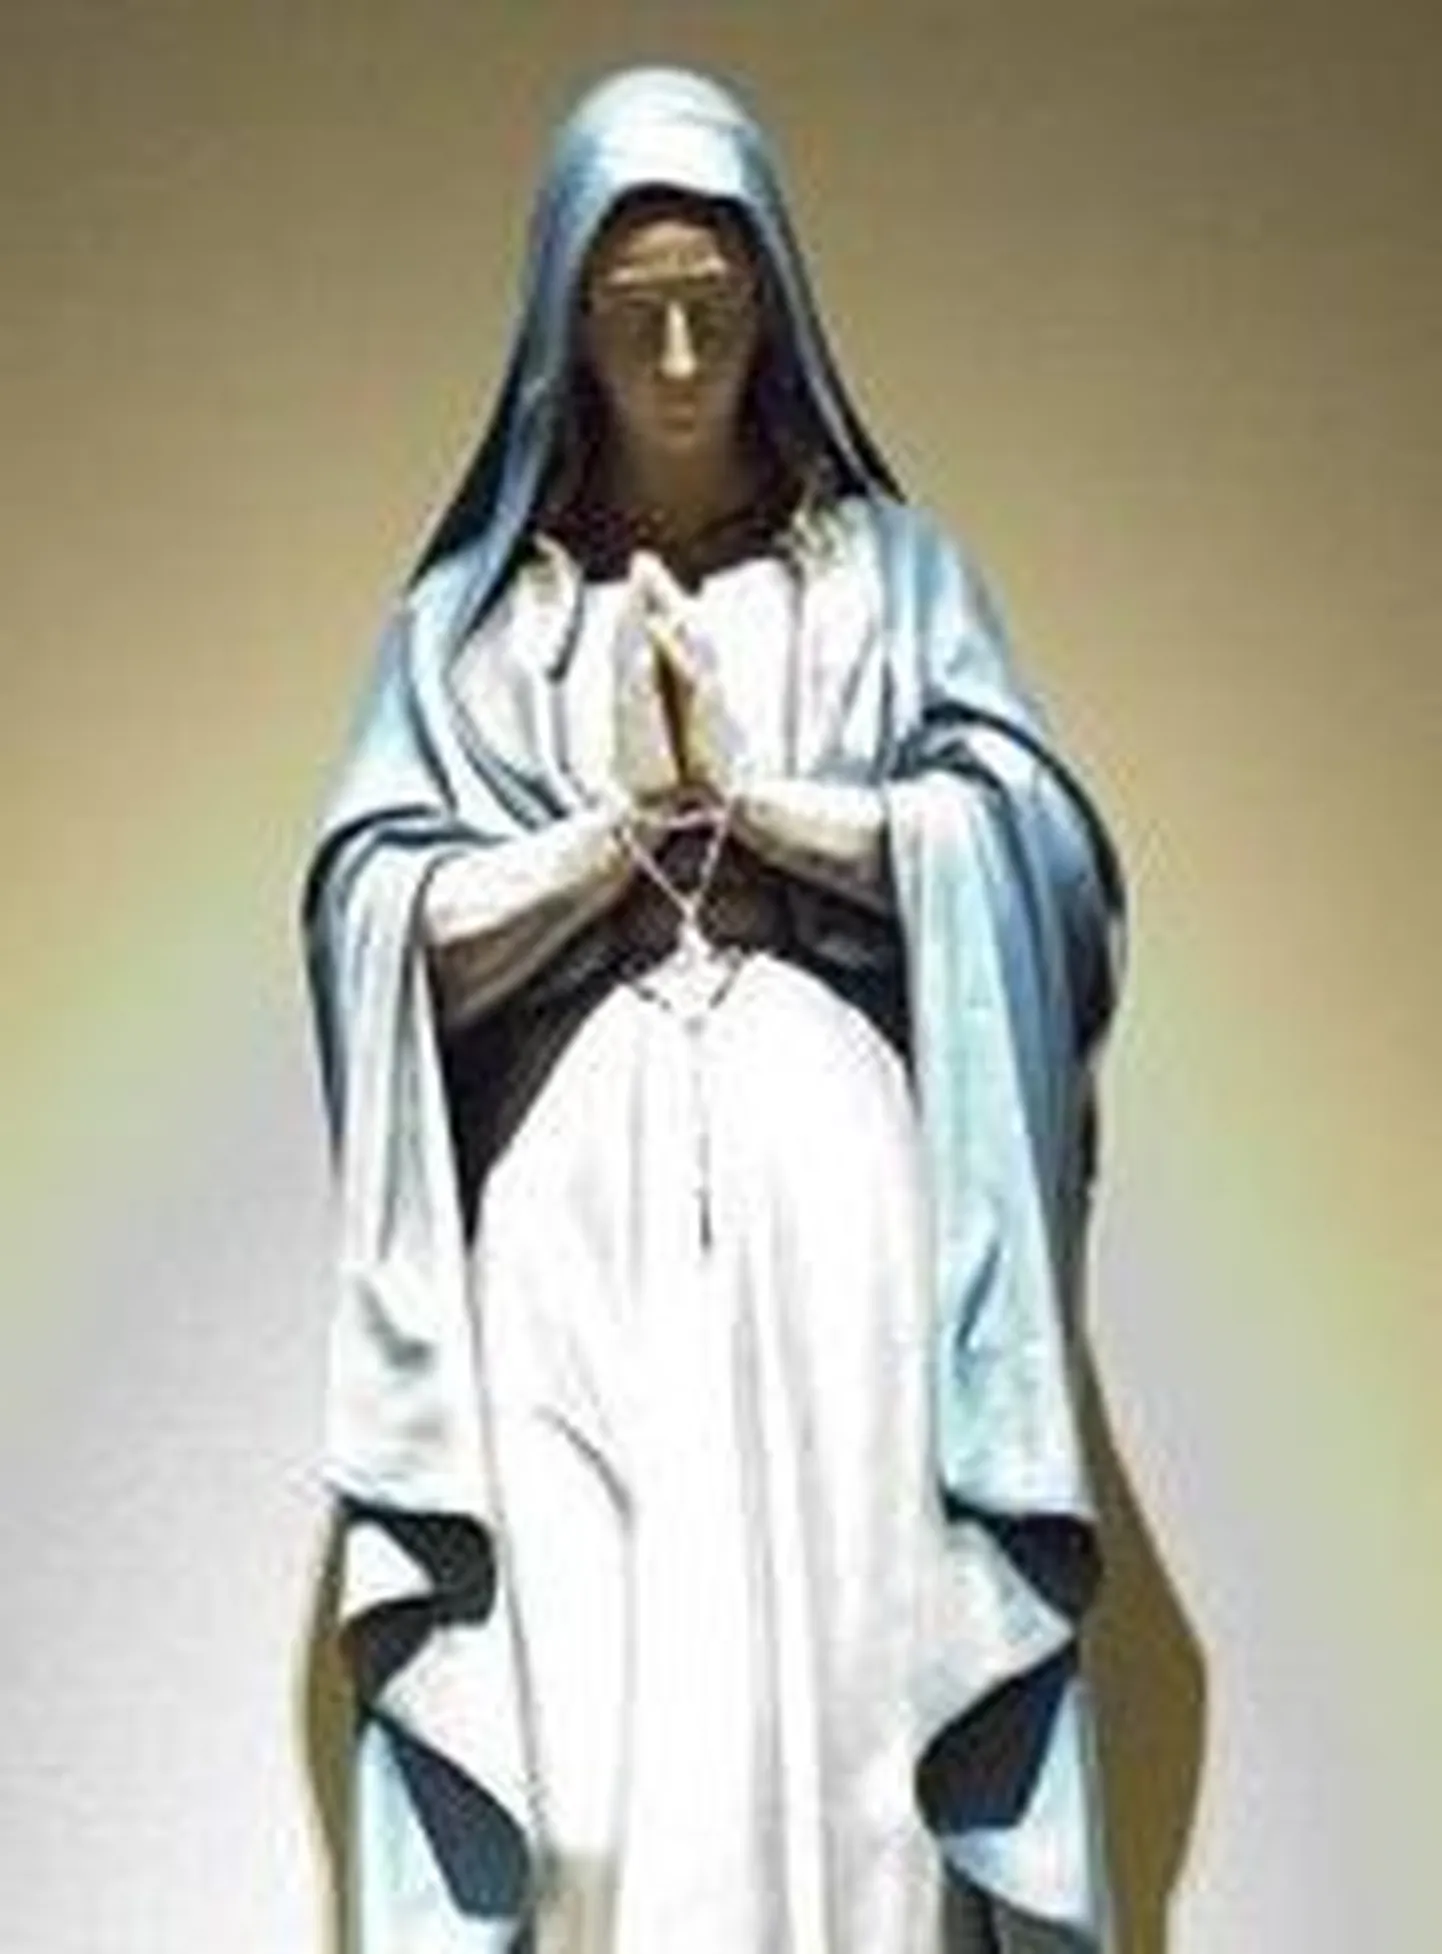 Šveitlane müüs seljal oleva neitsi Maarja tätoveeringu 150 000 euro eest. Fotol neitsi Maarja kuju